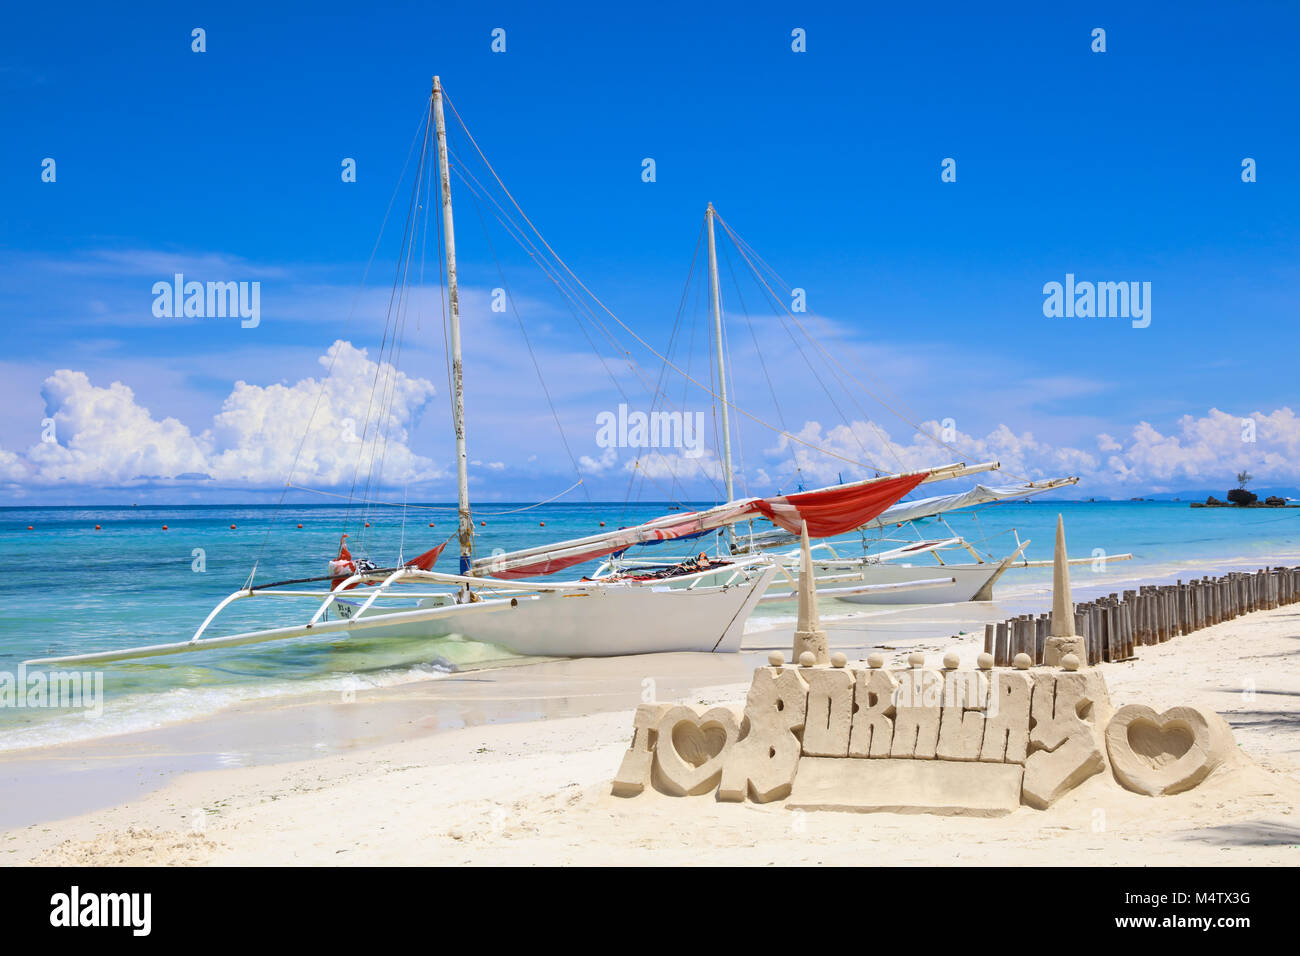 Castello di sabbia in una forma di I LOVE BORACAY e barche di pescatori locali sulla spiaggia bianca, Boracay Island, Filippine. Vacanze tropicali. Foto Stock